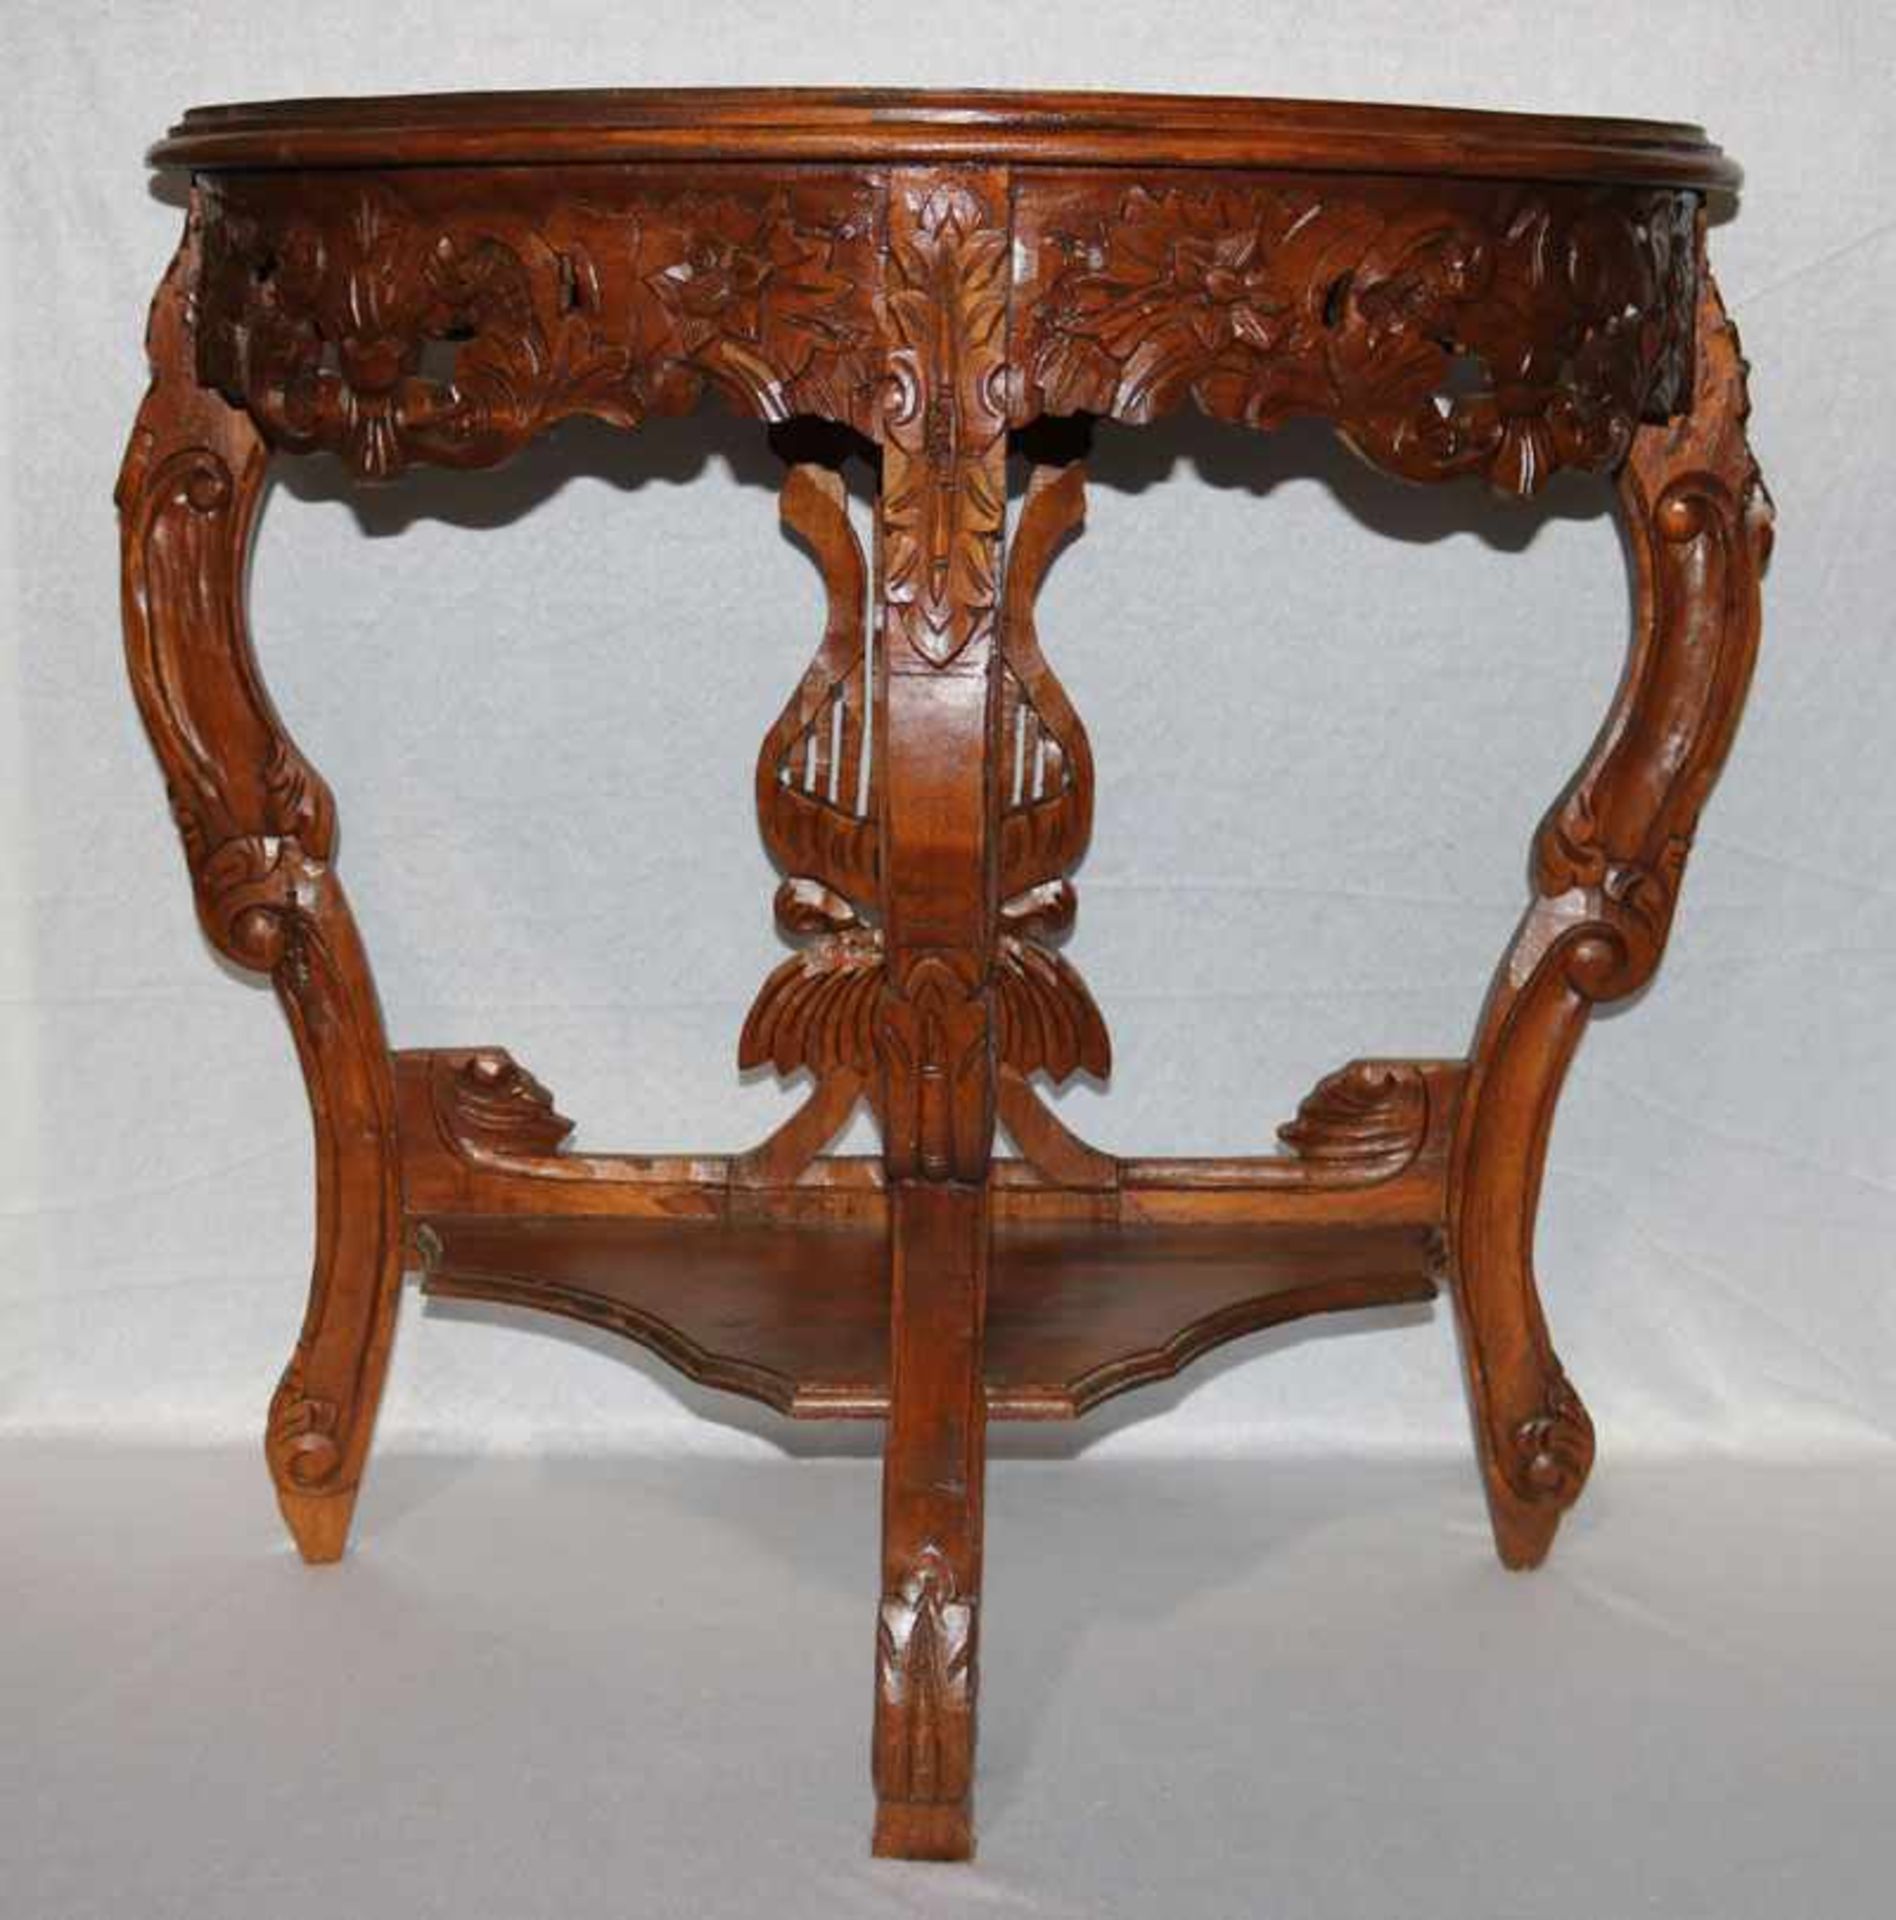 Asiatischer Holz Wandtisch in halbrunder Form, floral beschnitzt, H 78 cm, B 80 cm, T 42 cm, leichte